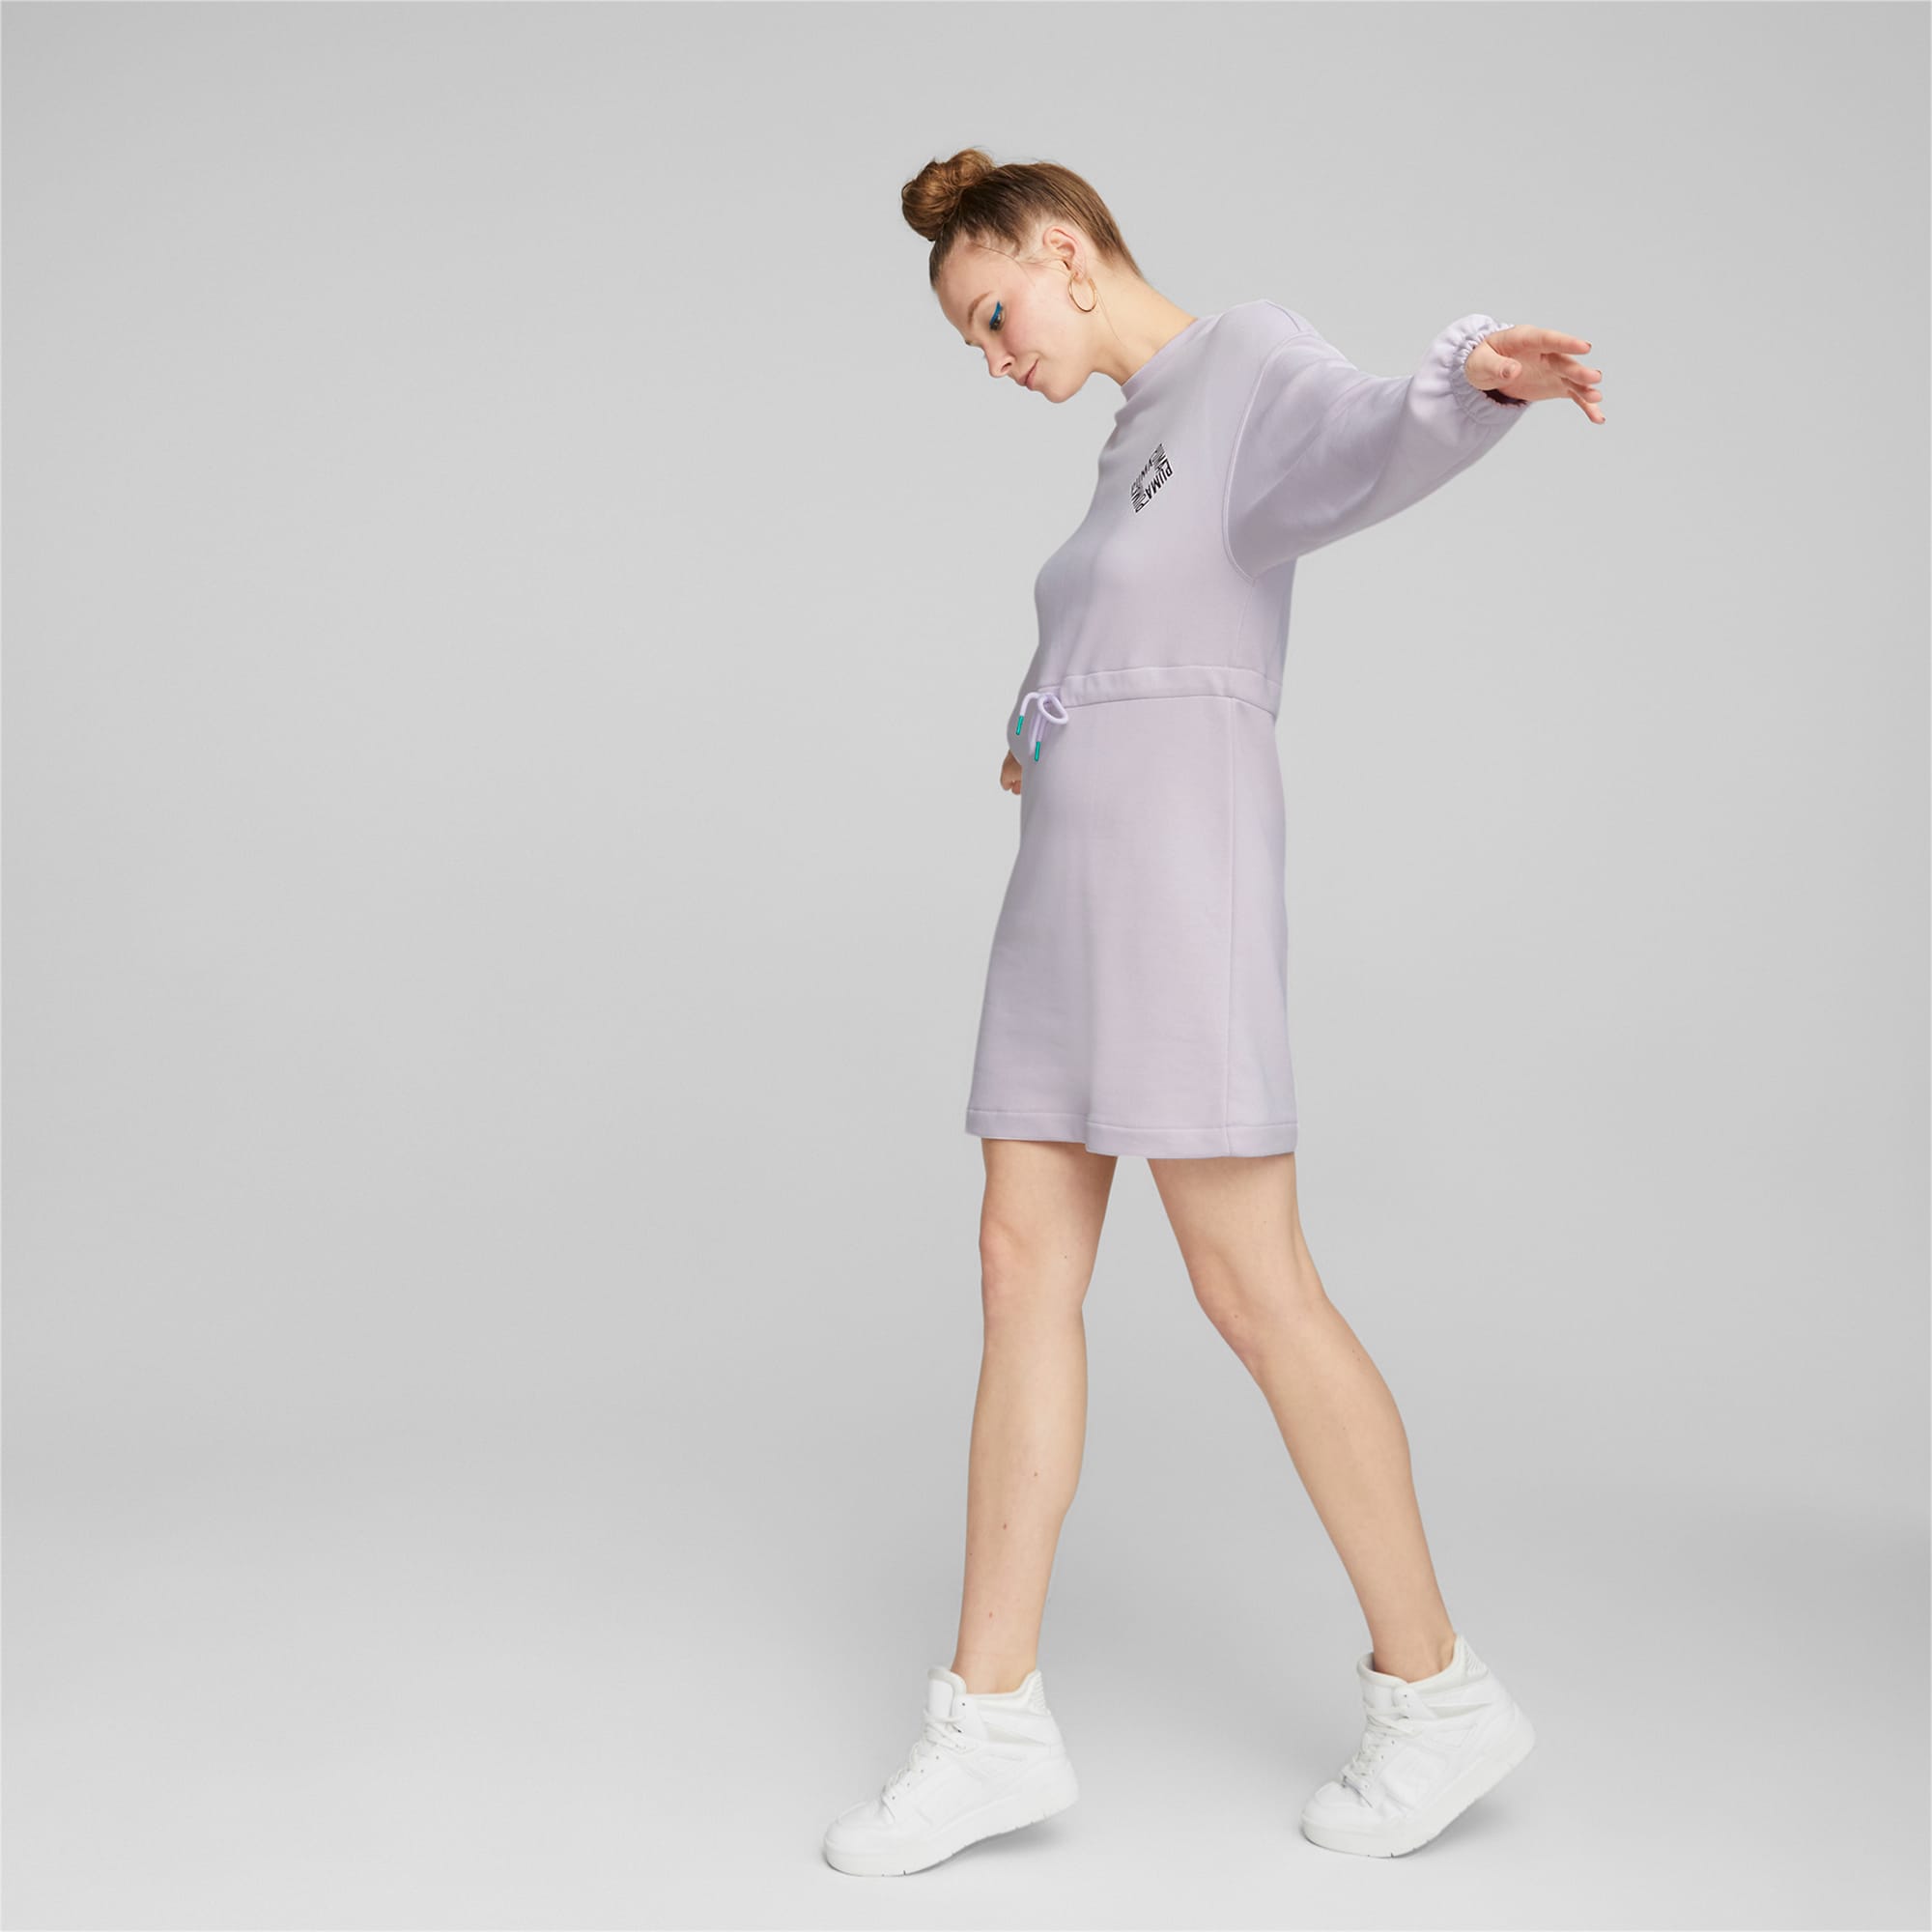 Sportswear by PUMA Crew Neck Dress | PUMA | Sweatkleider